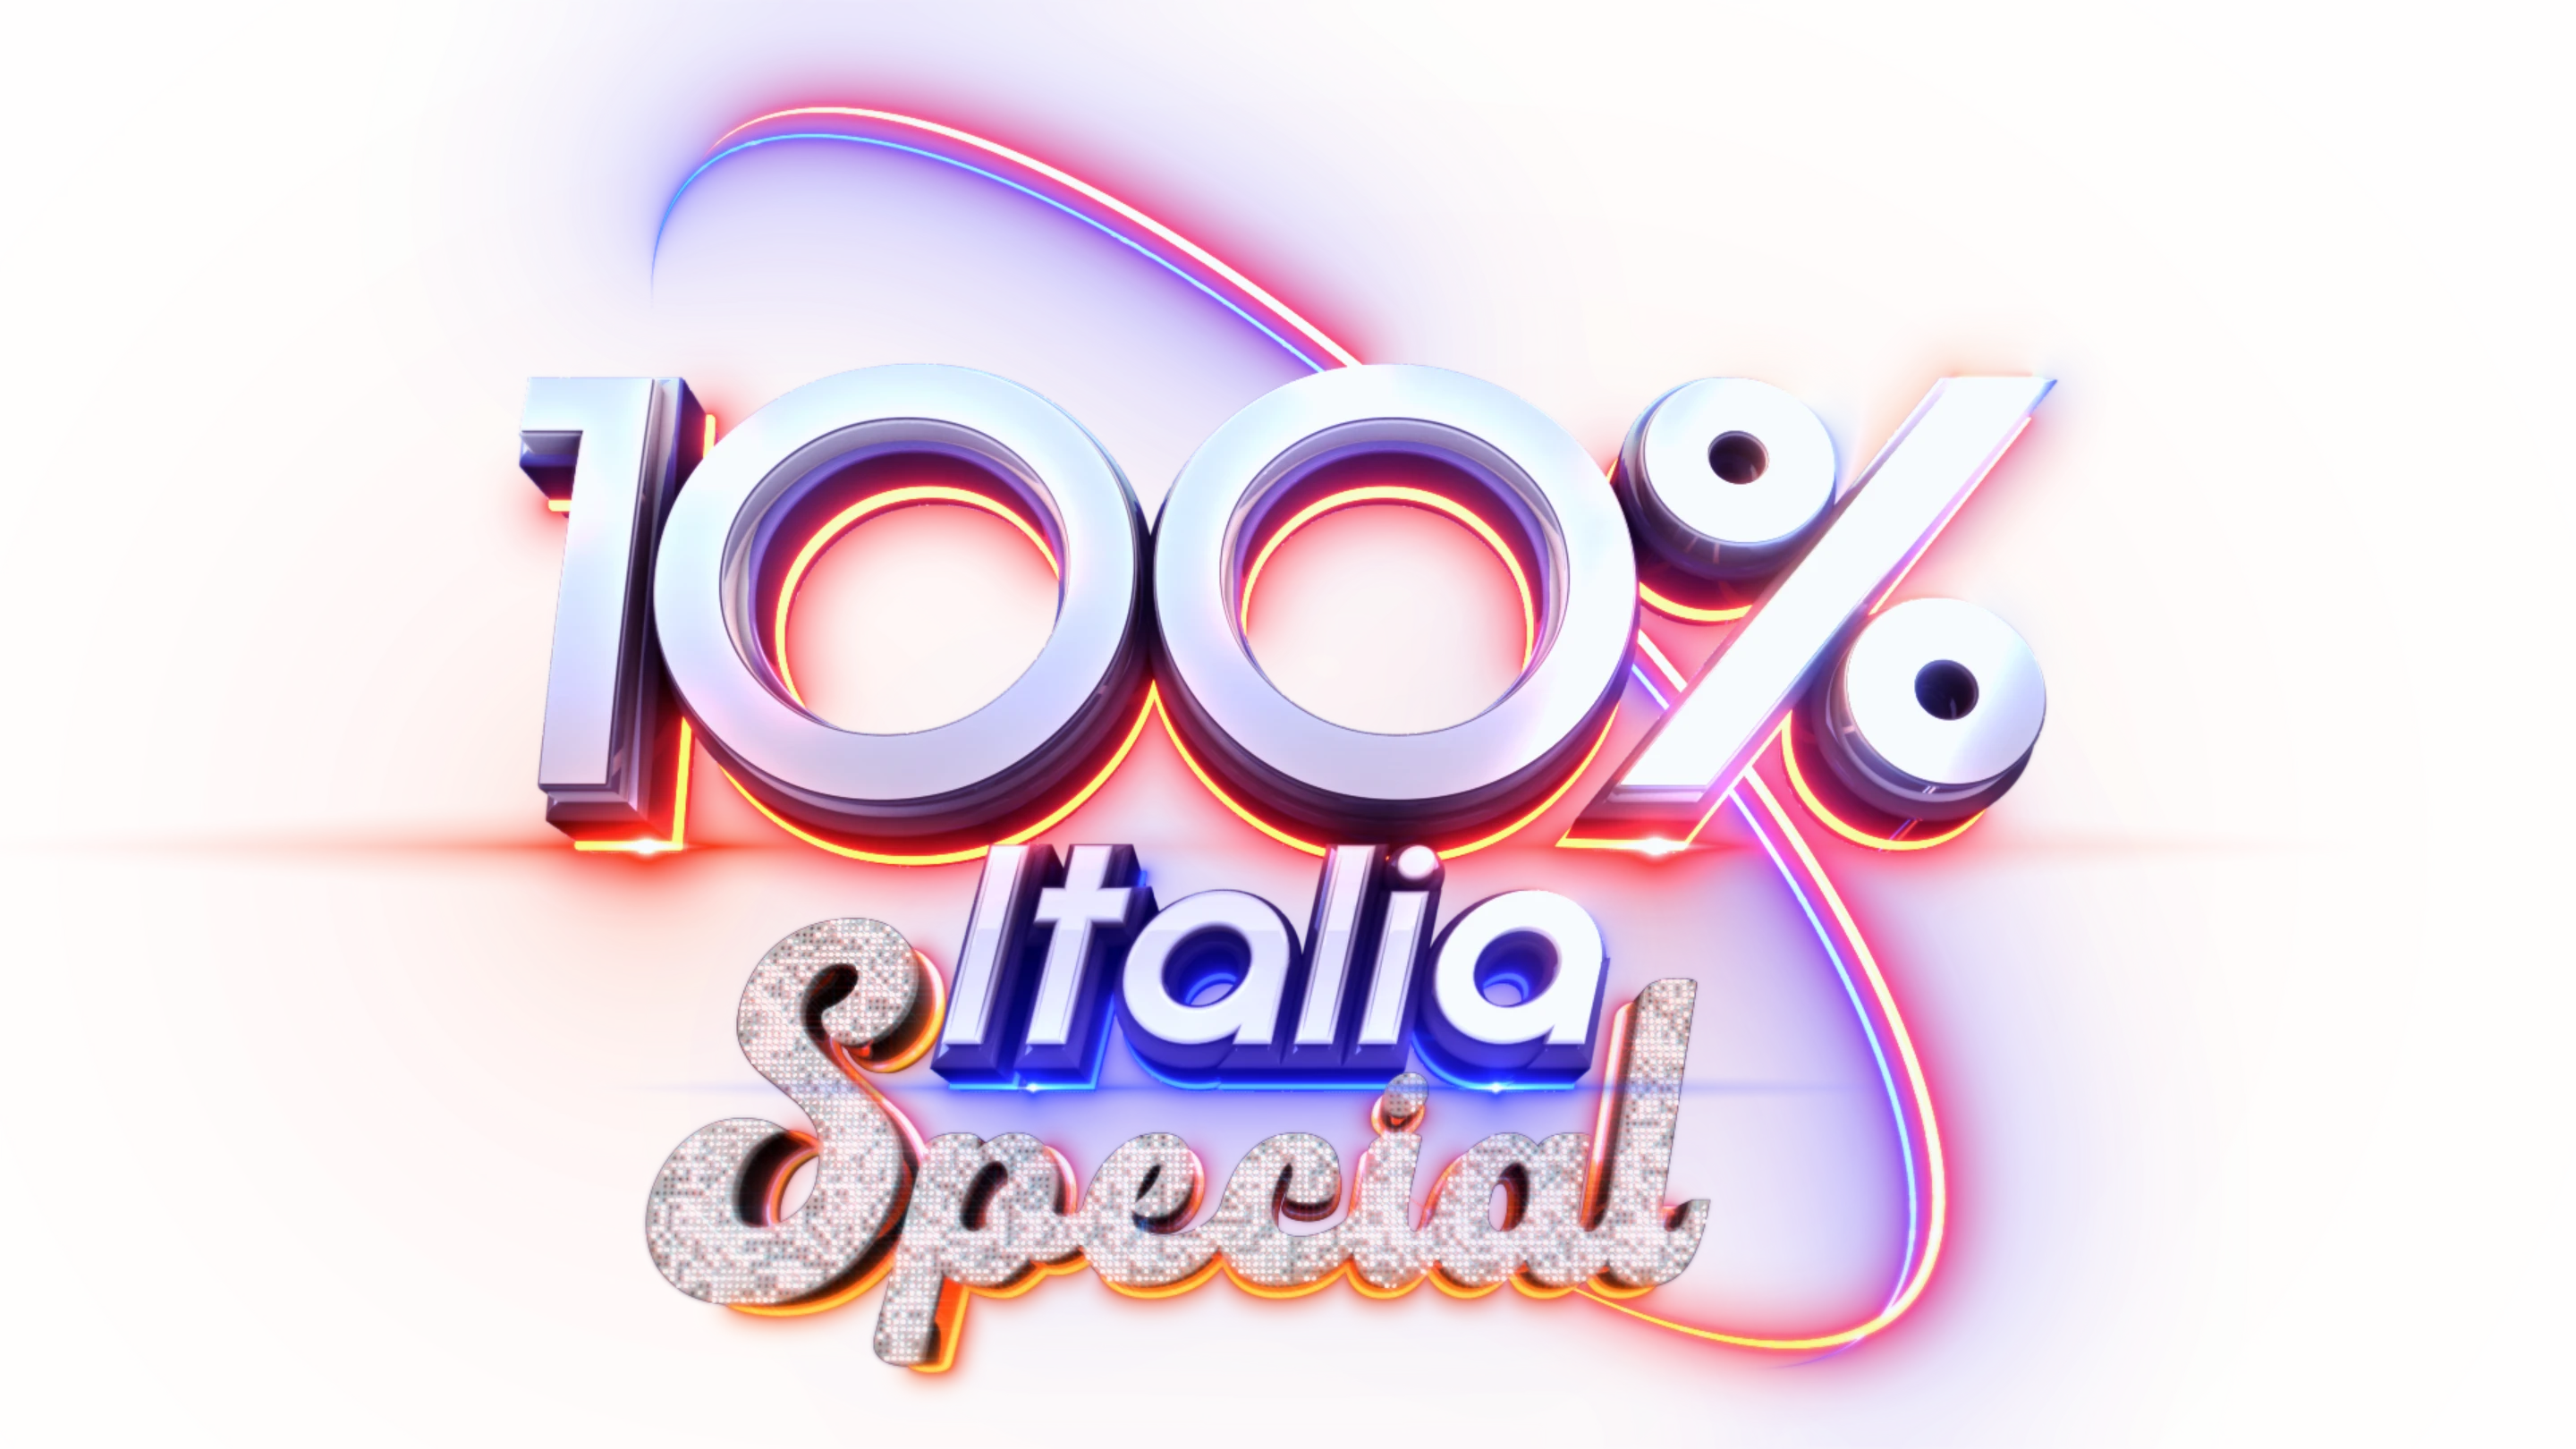 100% Italia Special